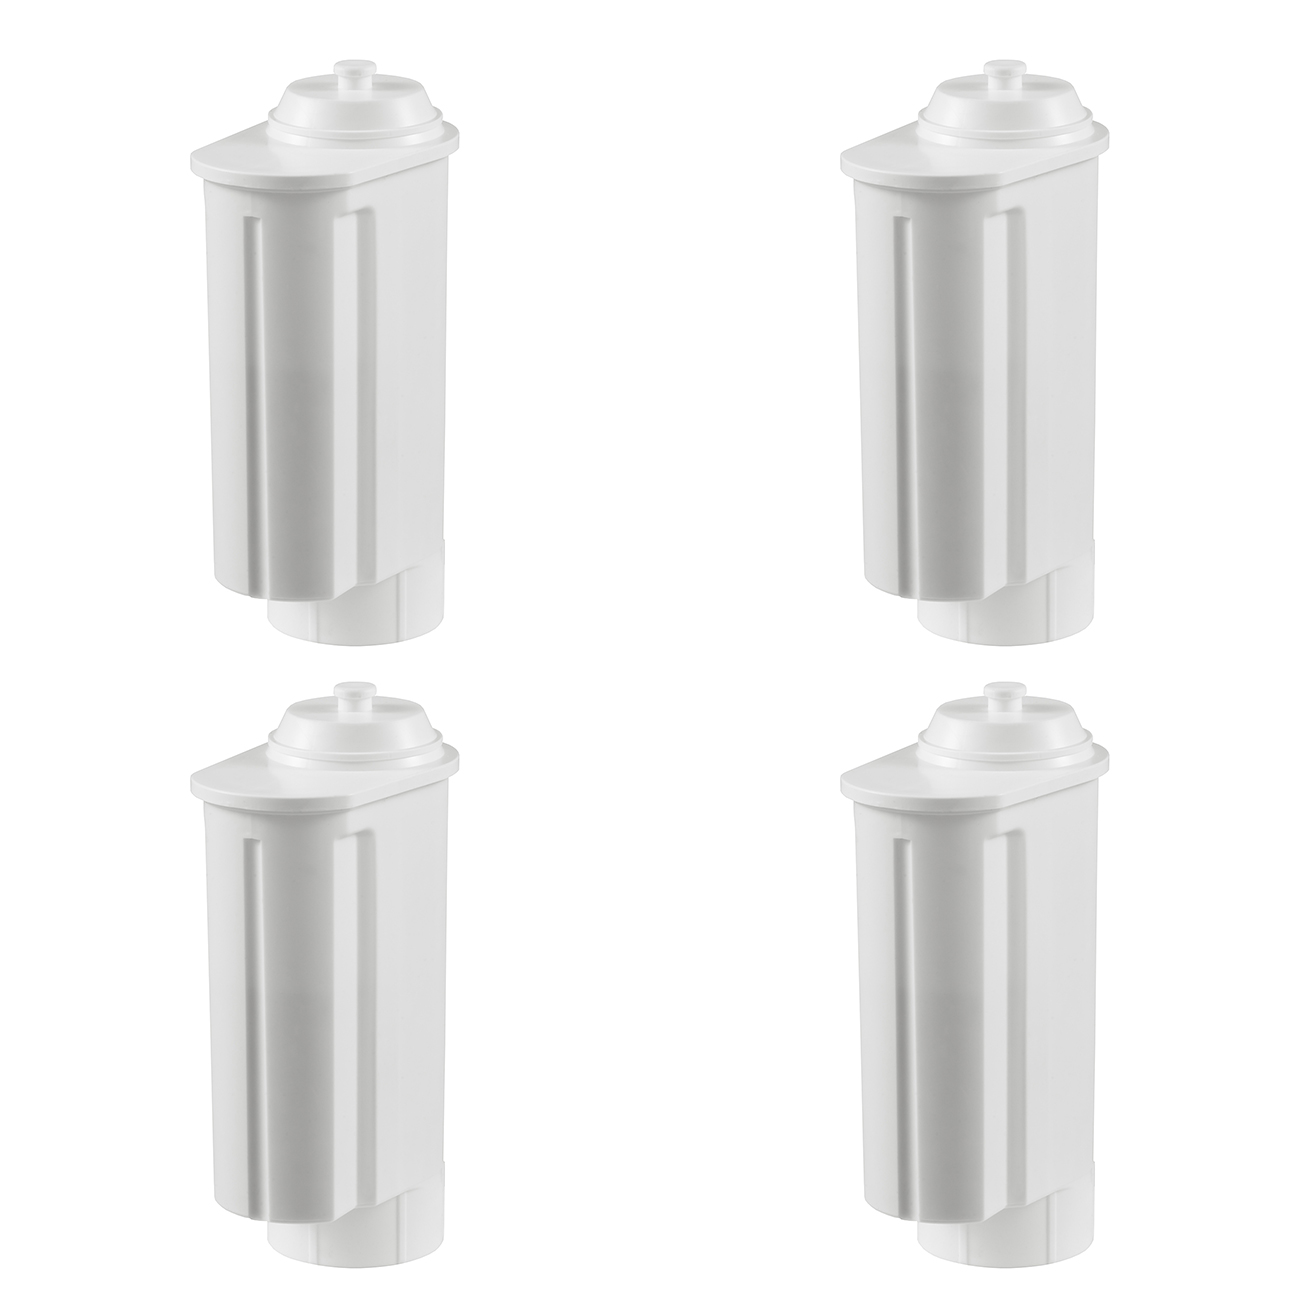 4 Stück Filterpatronen geeignet für Siemens/Bosch, Gaggenau-, Neff-, VeroBar-Pro Kaffeevollautomaten